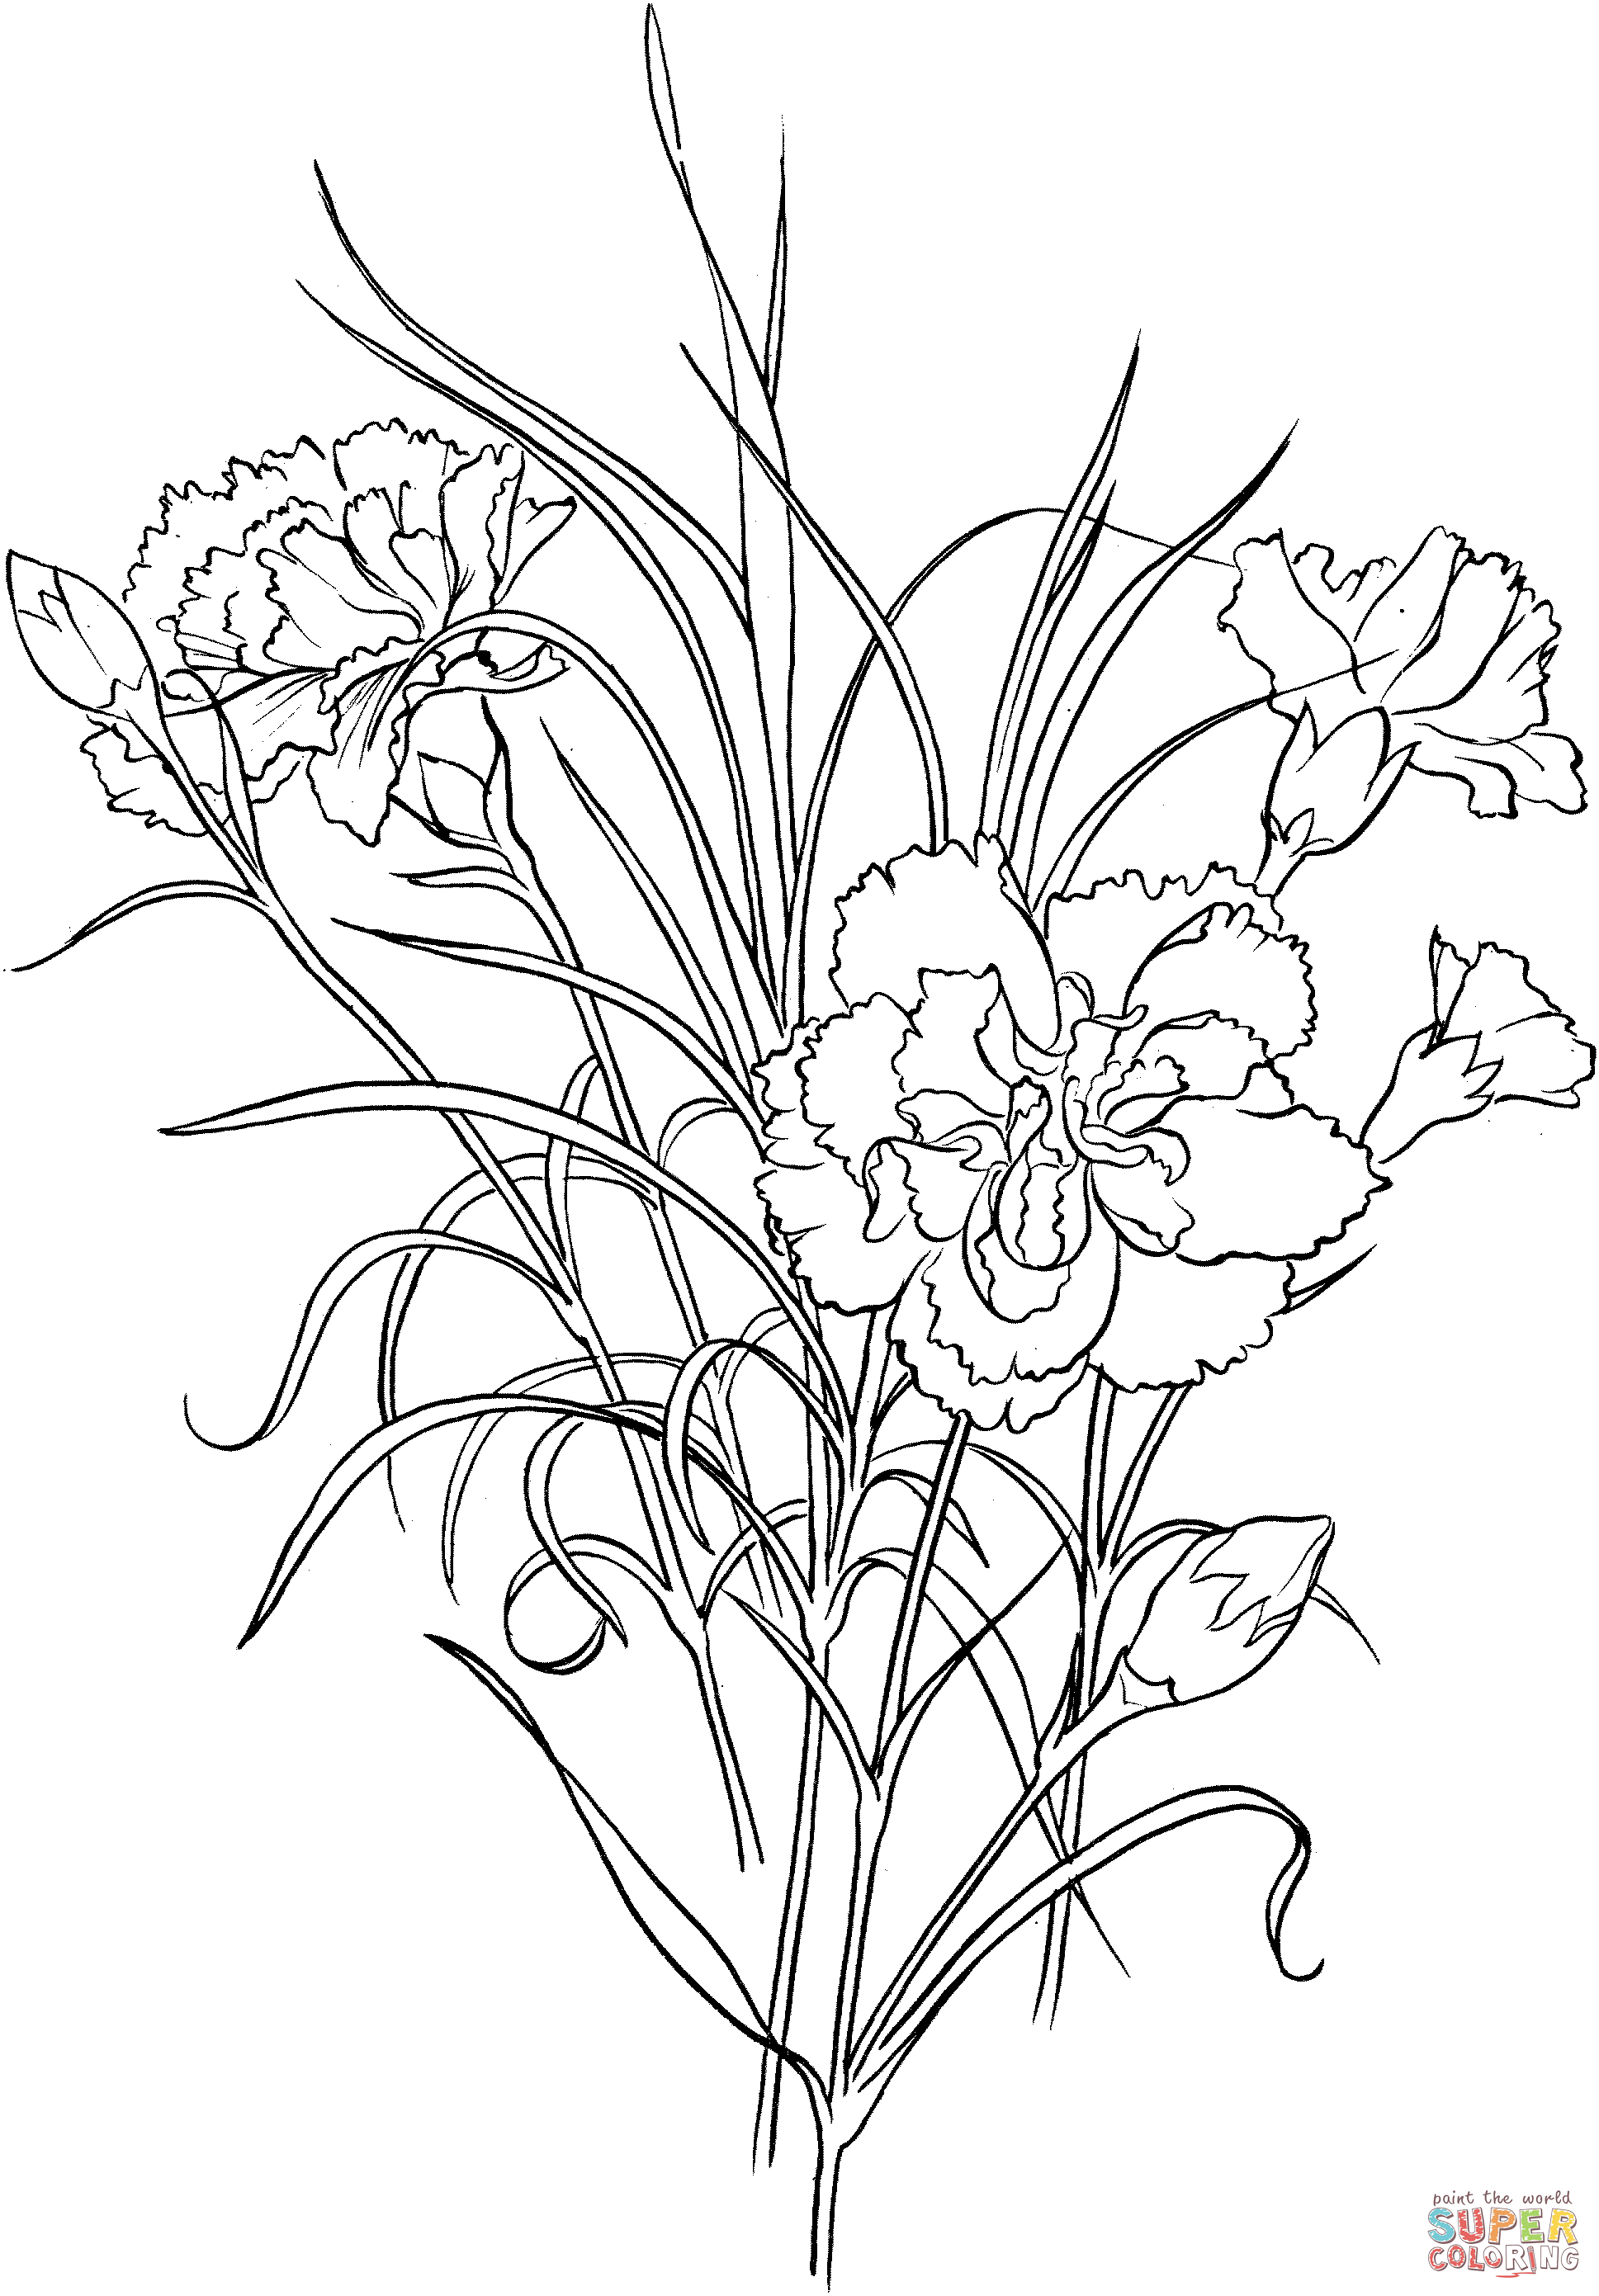 Dianthus Caryophyllus Clove Розовая гвоздика из гвоздики